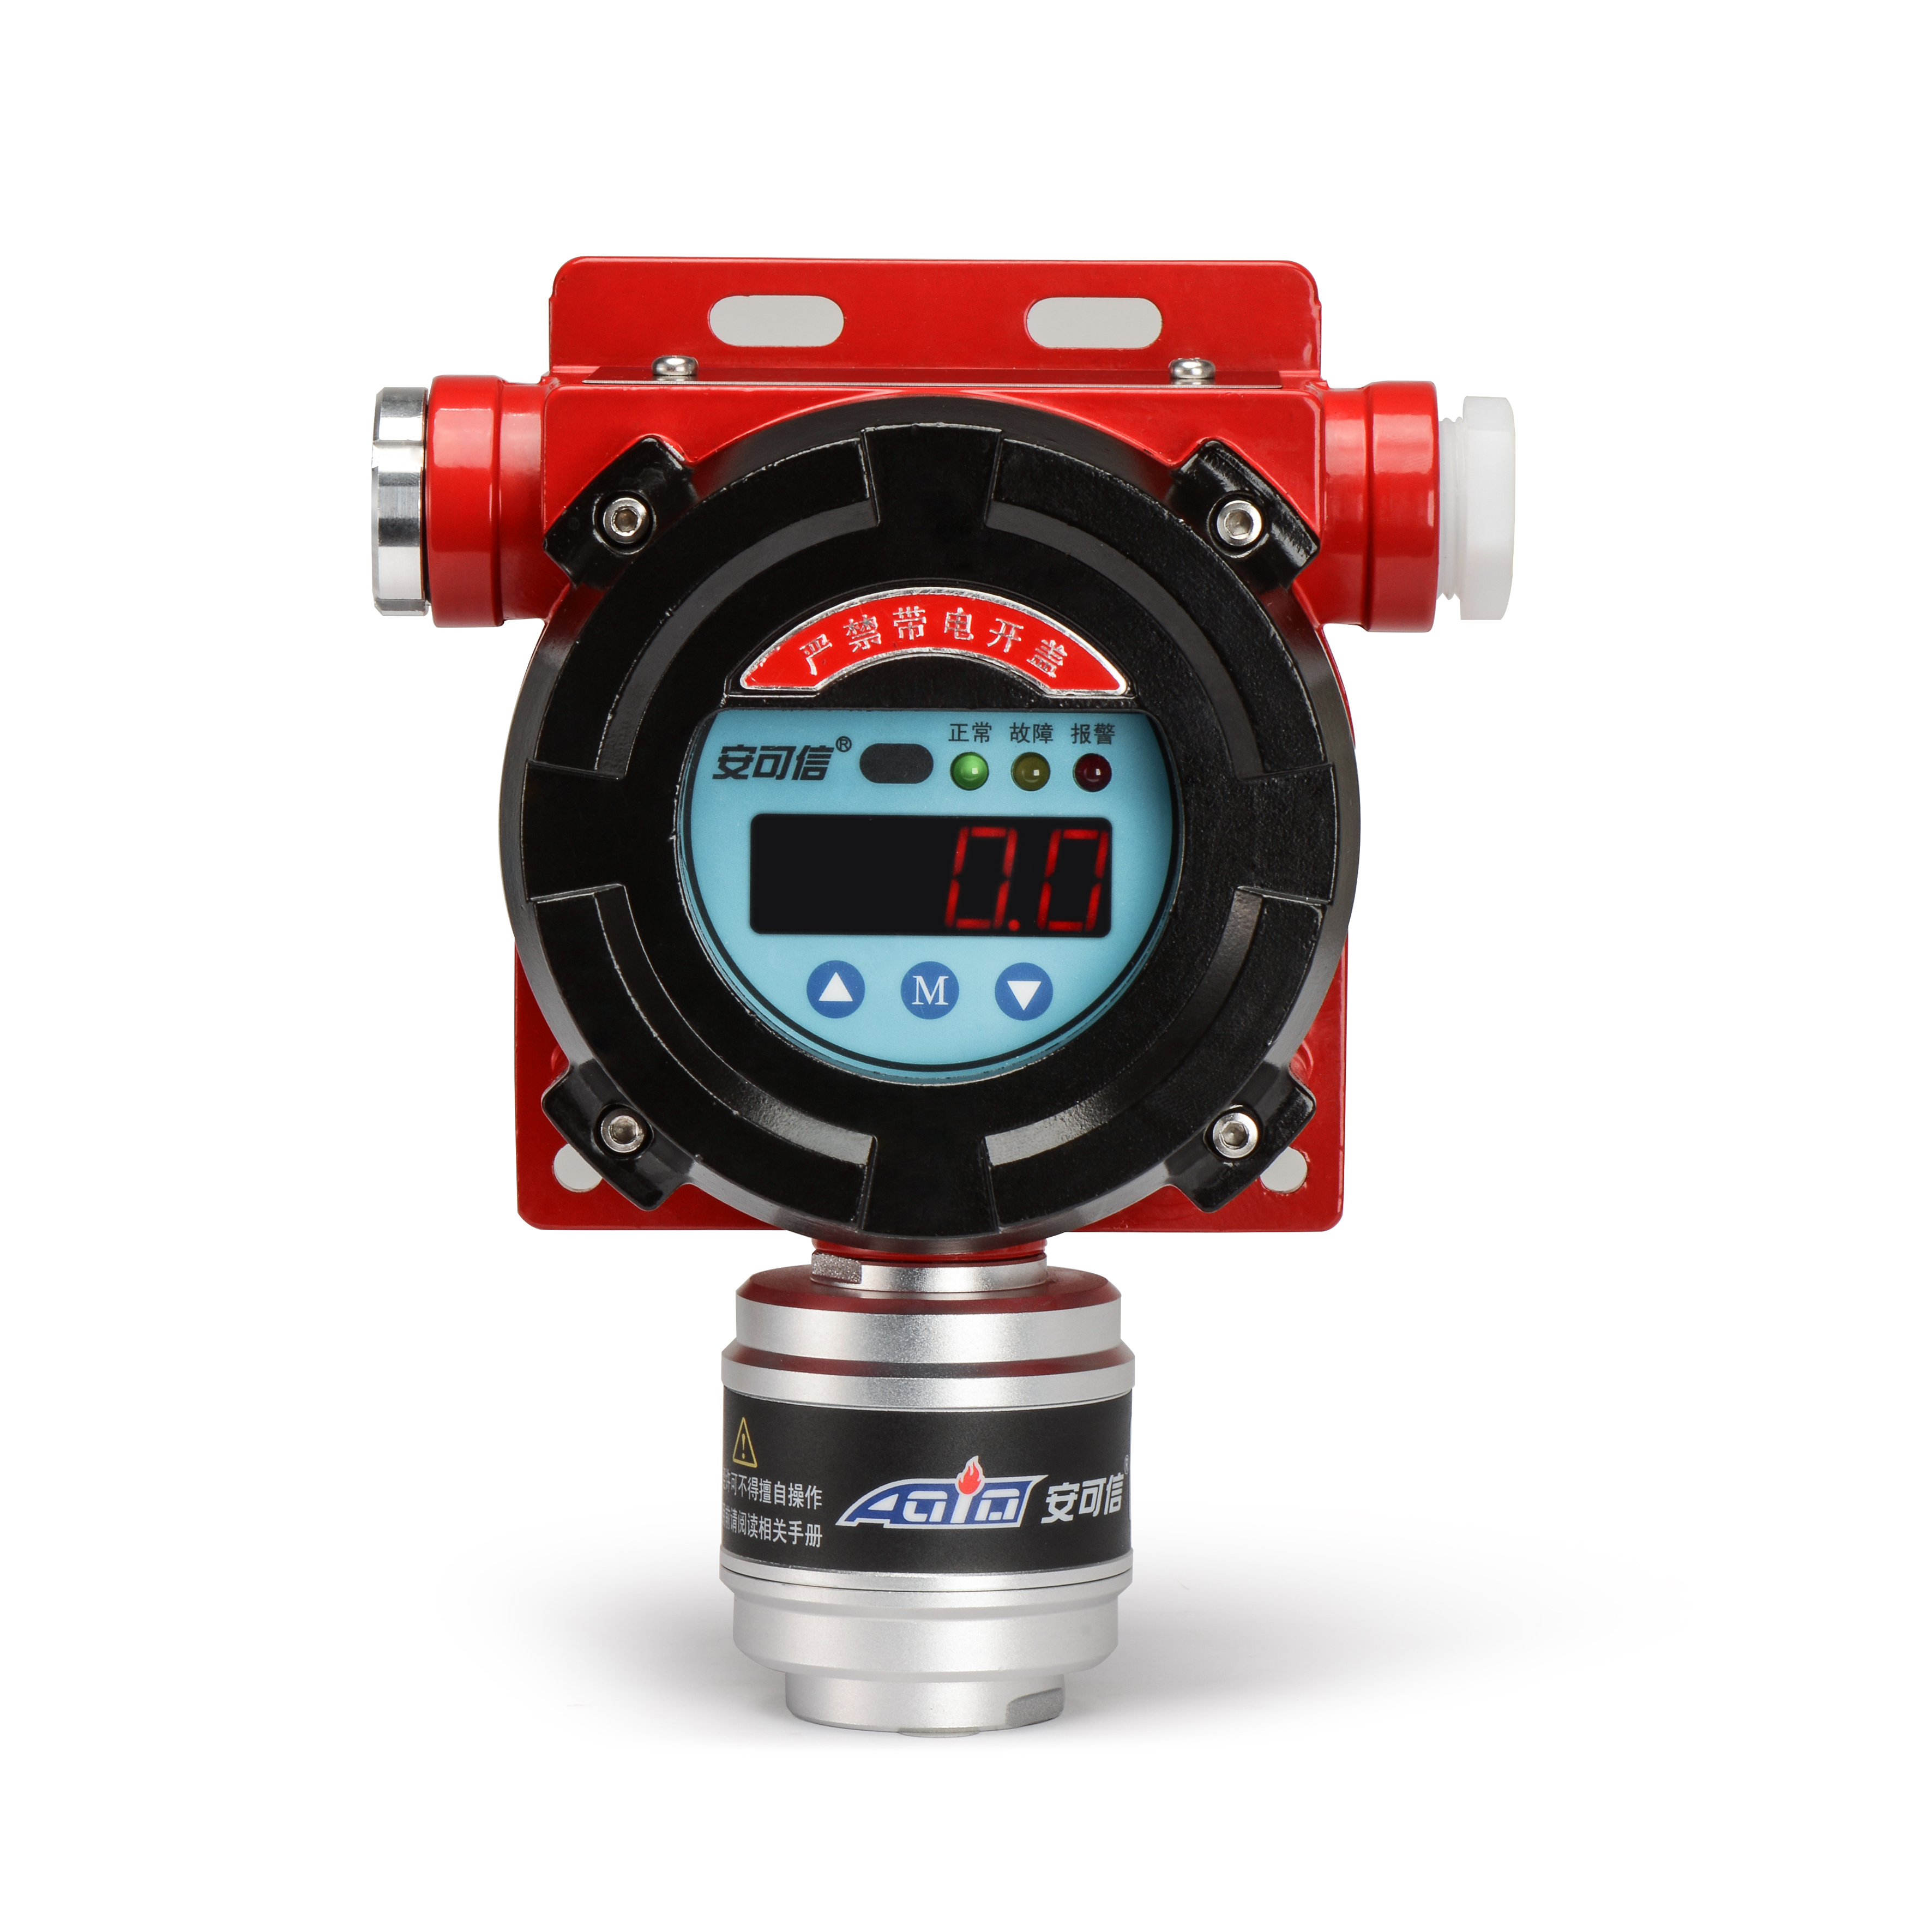 Standardna konfiguracija benzinskih stanica: alarm za detekciju zapaljivog plina kako bi se osigurala sigurnost plina